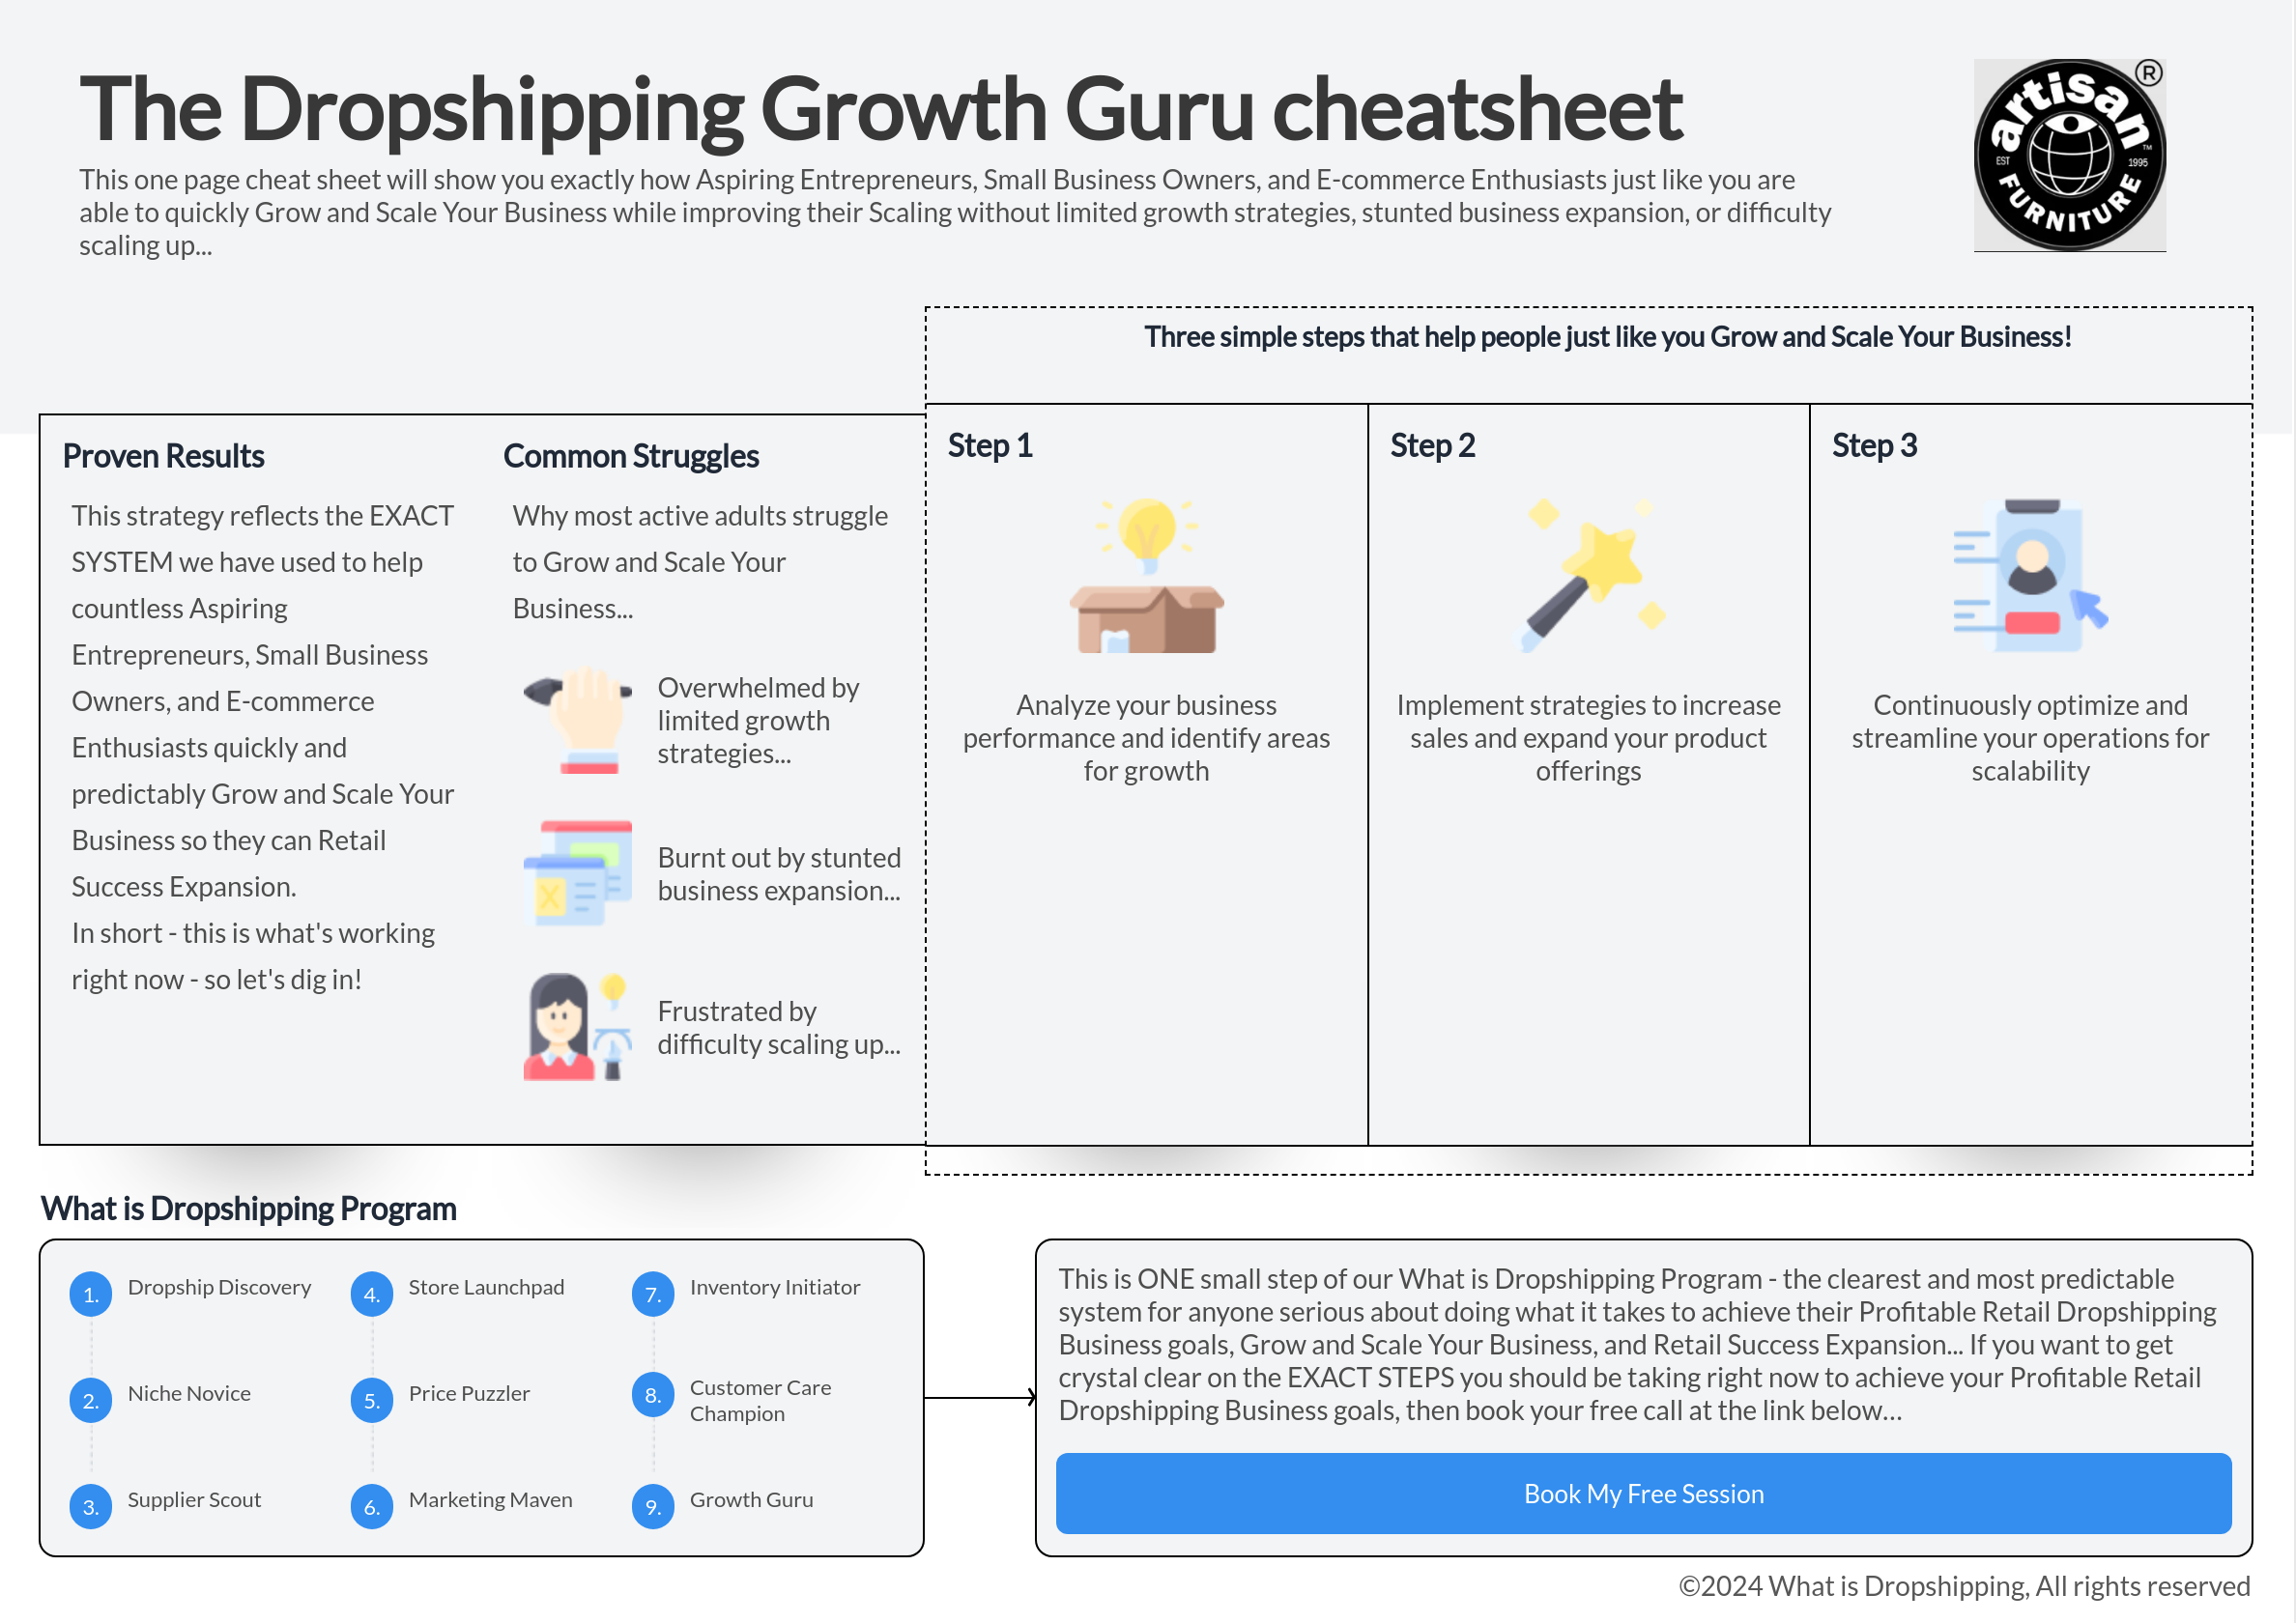 grafički prikaz: Dropshipping vodič za rast poslovanja i varalica.